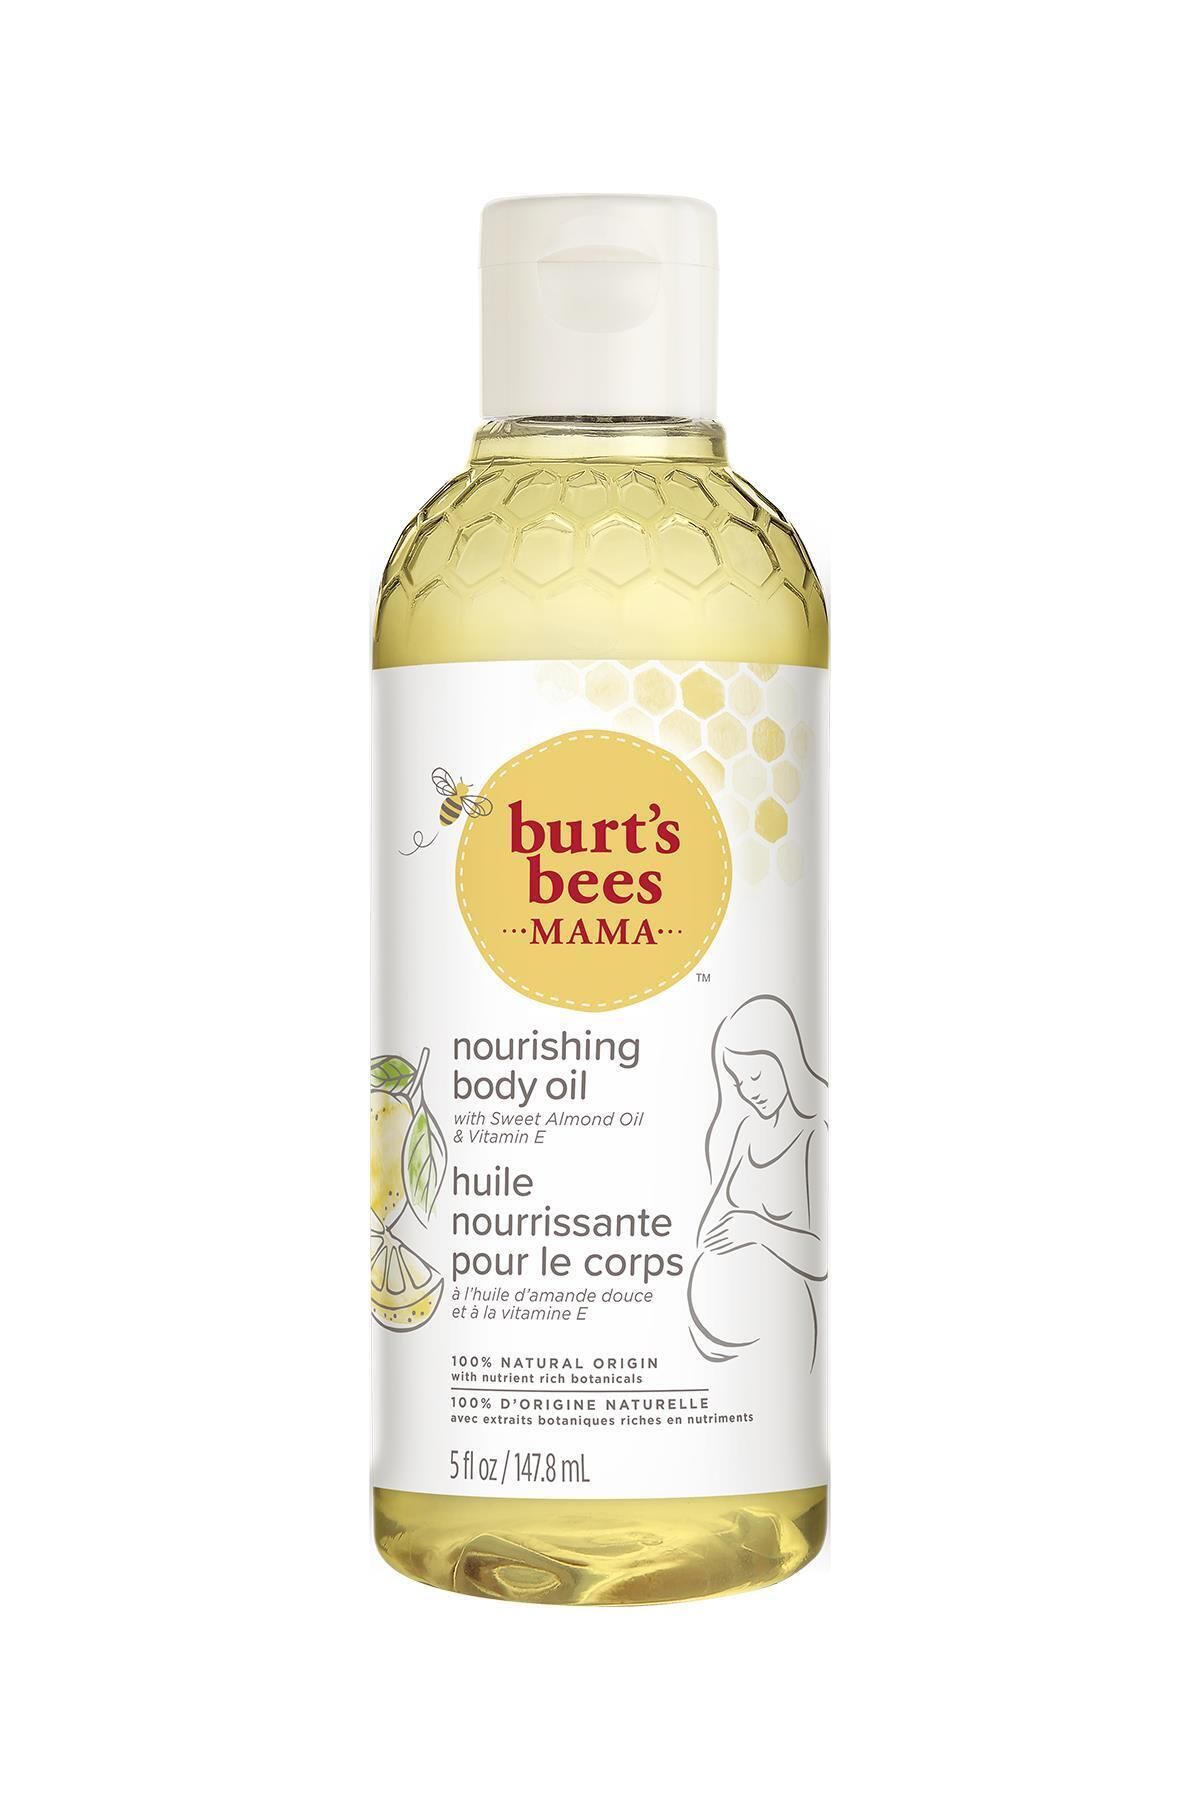 Burt's Bees Annelere Özel Vücut Bakım Yağı - Mama Bee Body Oil 147.8 ml.